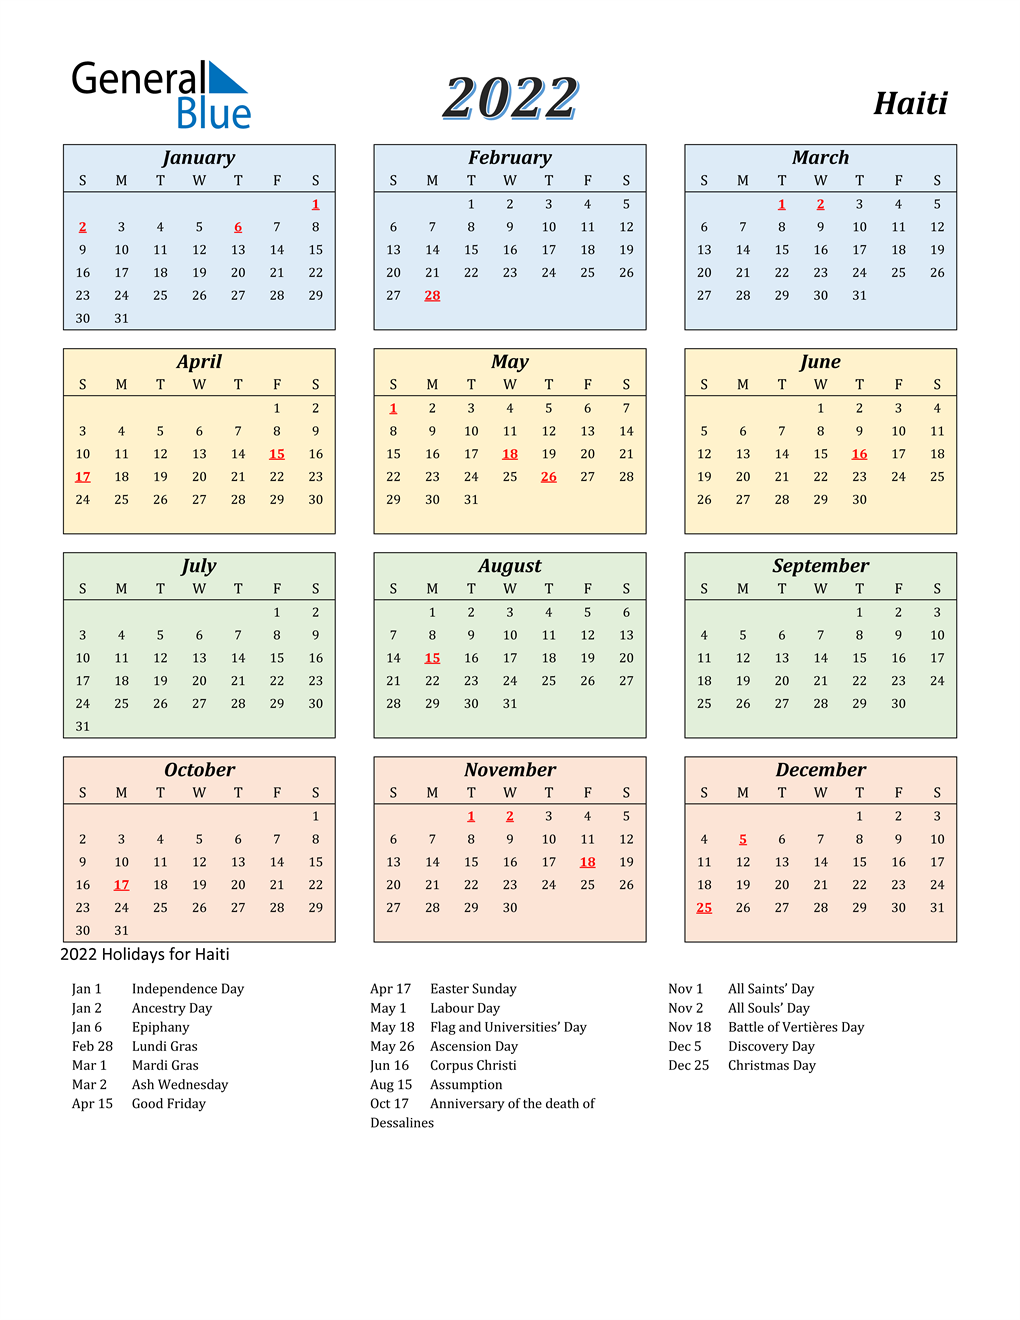 Haiti Calendar 2022